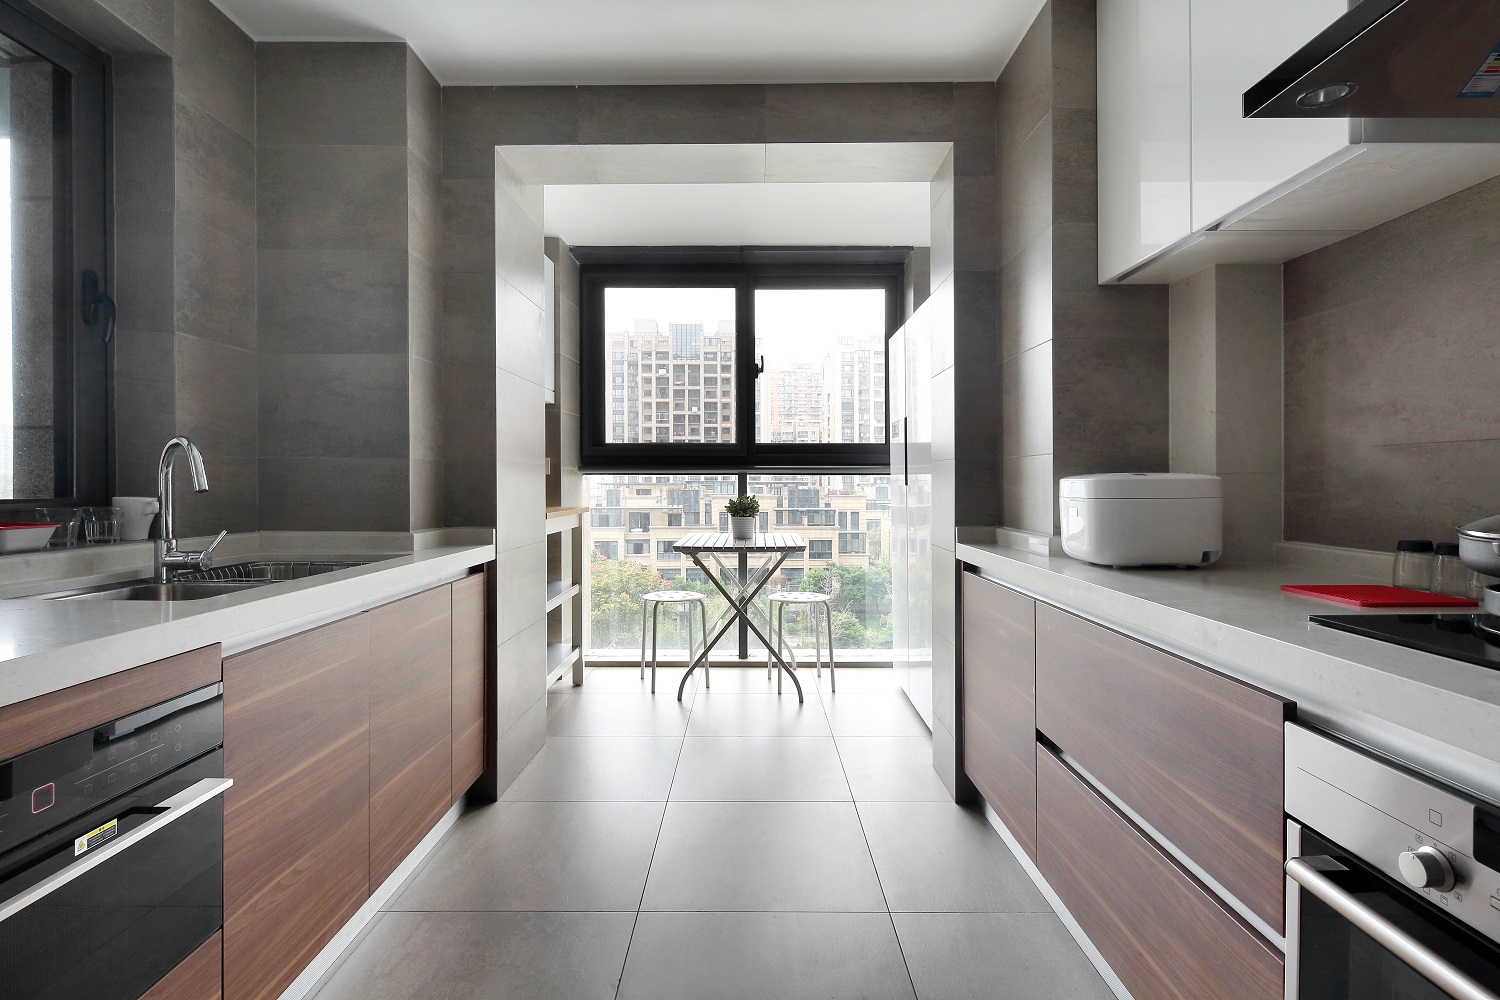 厨房设计比较保守，空间采光较好，木质橱柜给单调的空间添加了优雅气息。